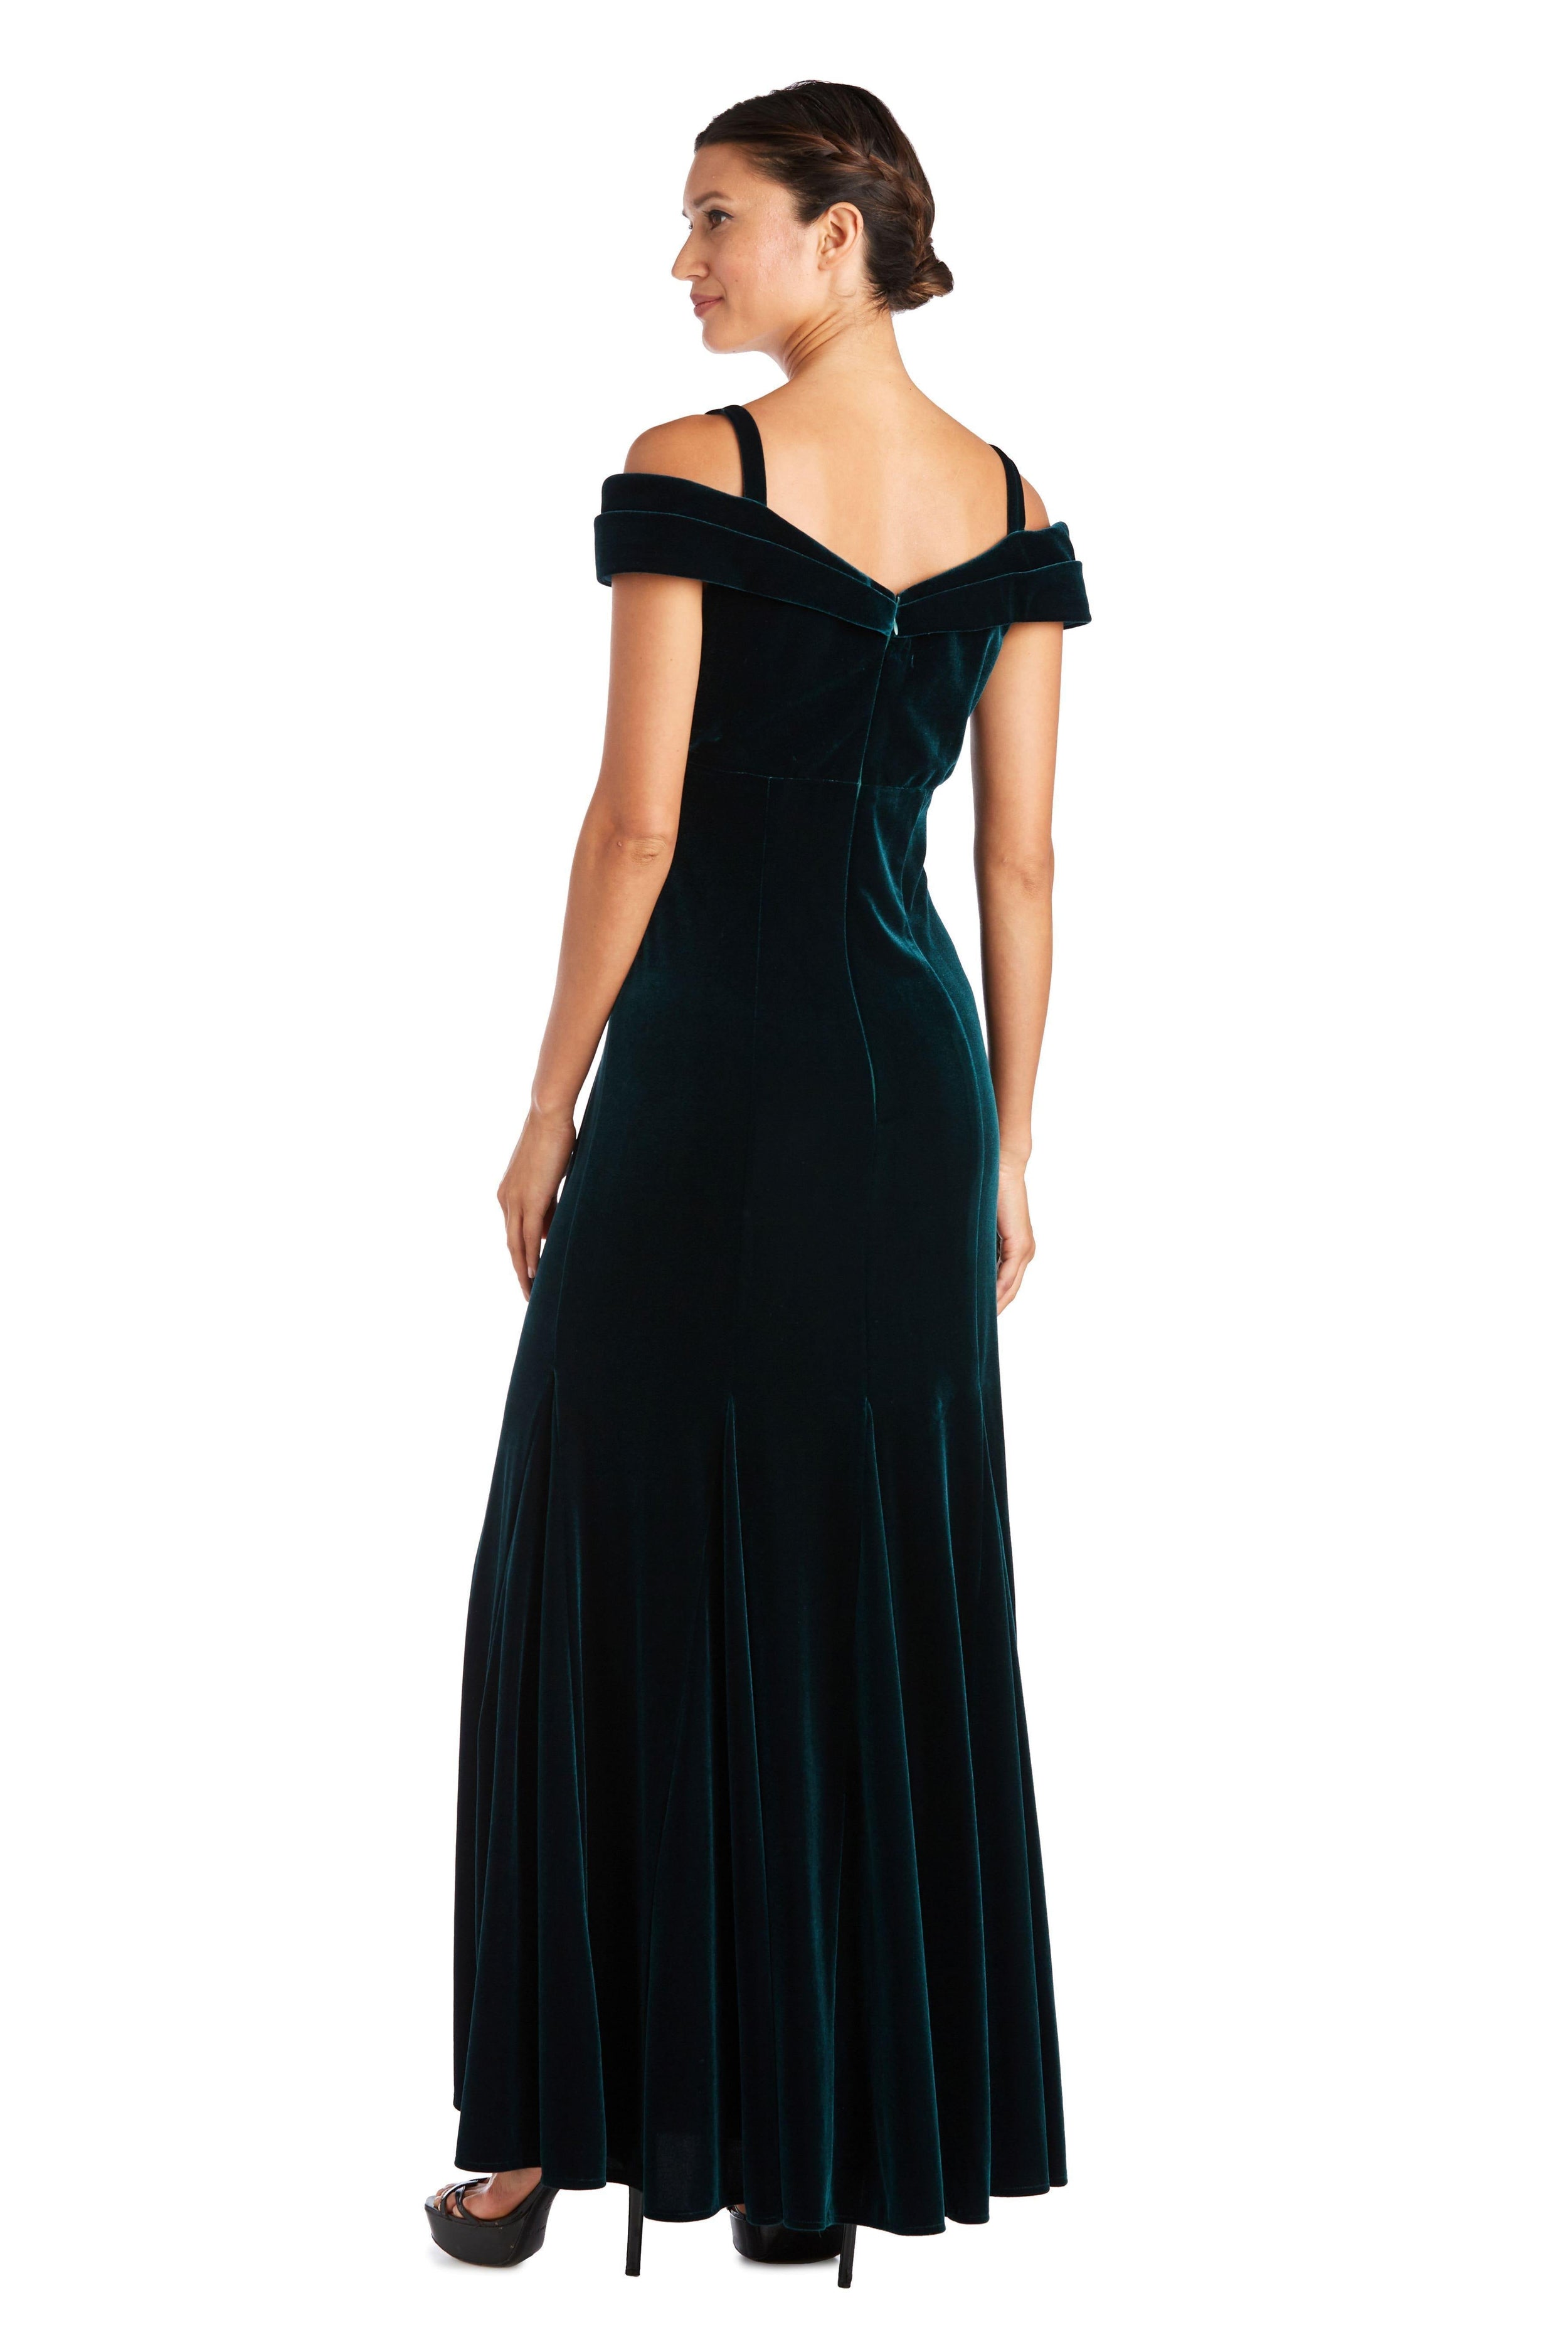 R&M Richards Long Formal Off Shoulder Velvet Dress 2509 - The Dress Outlet